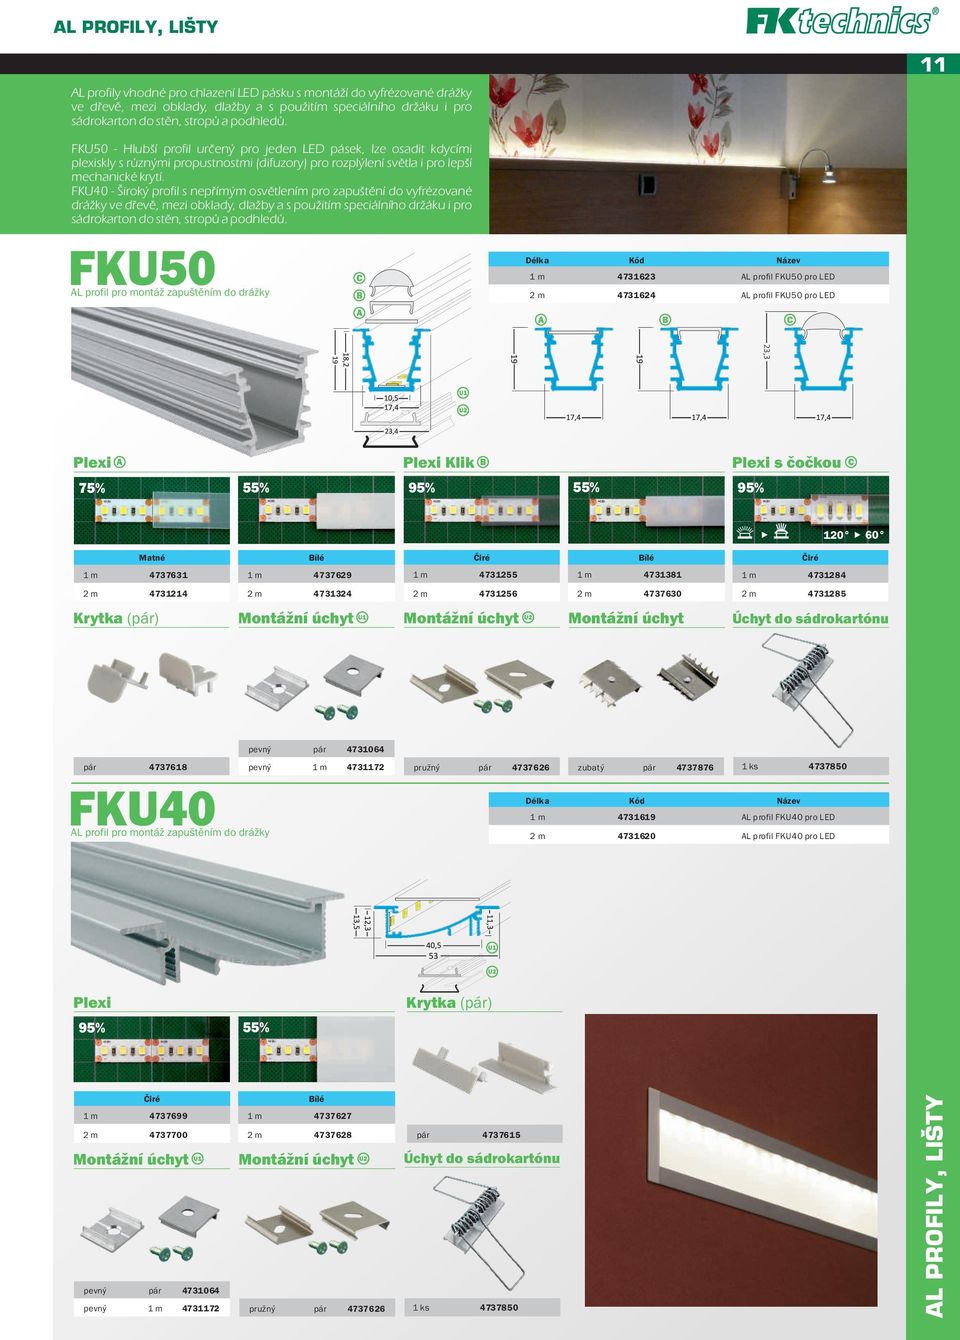 FKU40 - Široký profil s nepřímým osvětlením pro zapuštění do vyfrézované drážky ve dřevě, mezi obklady, dlažby a s použitím speciálního držáku i pro sádrokarton do stěn, stropů a podhledů.